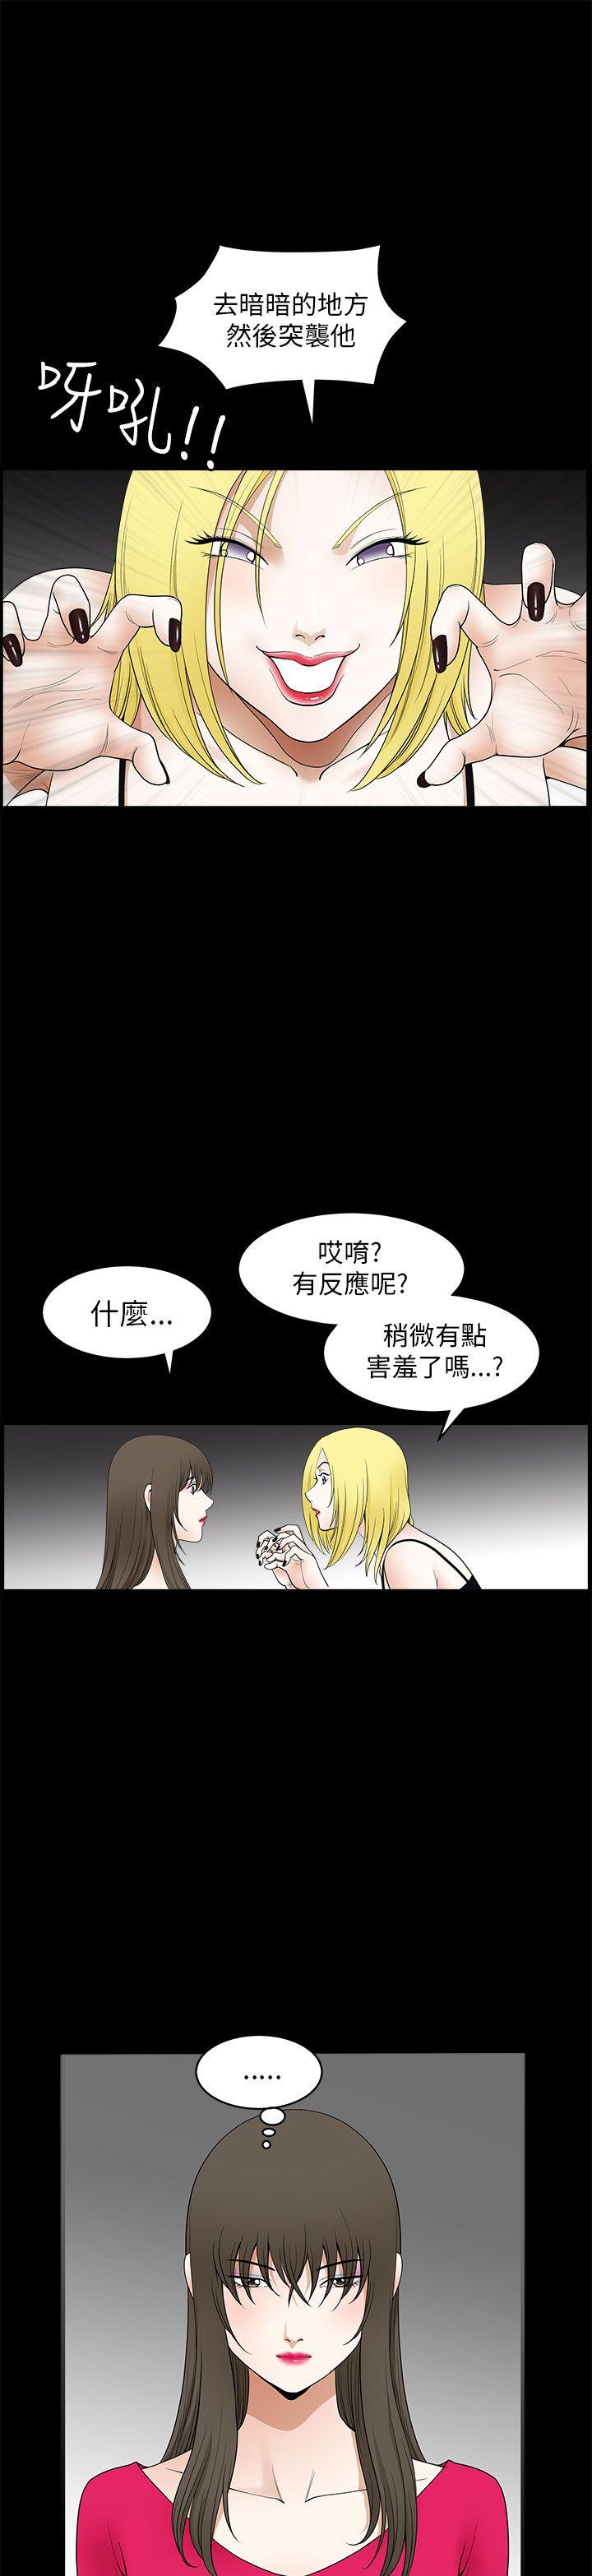 韩国污漫画 煦娜 第10话 27